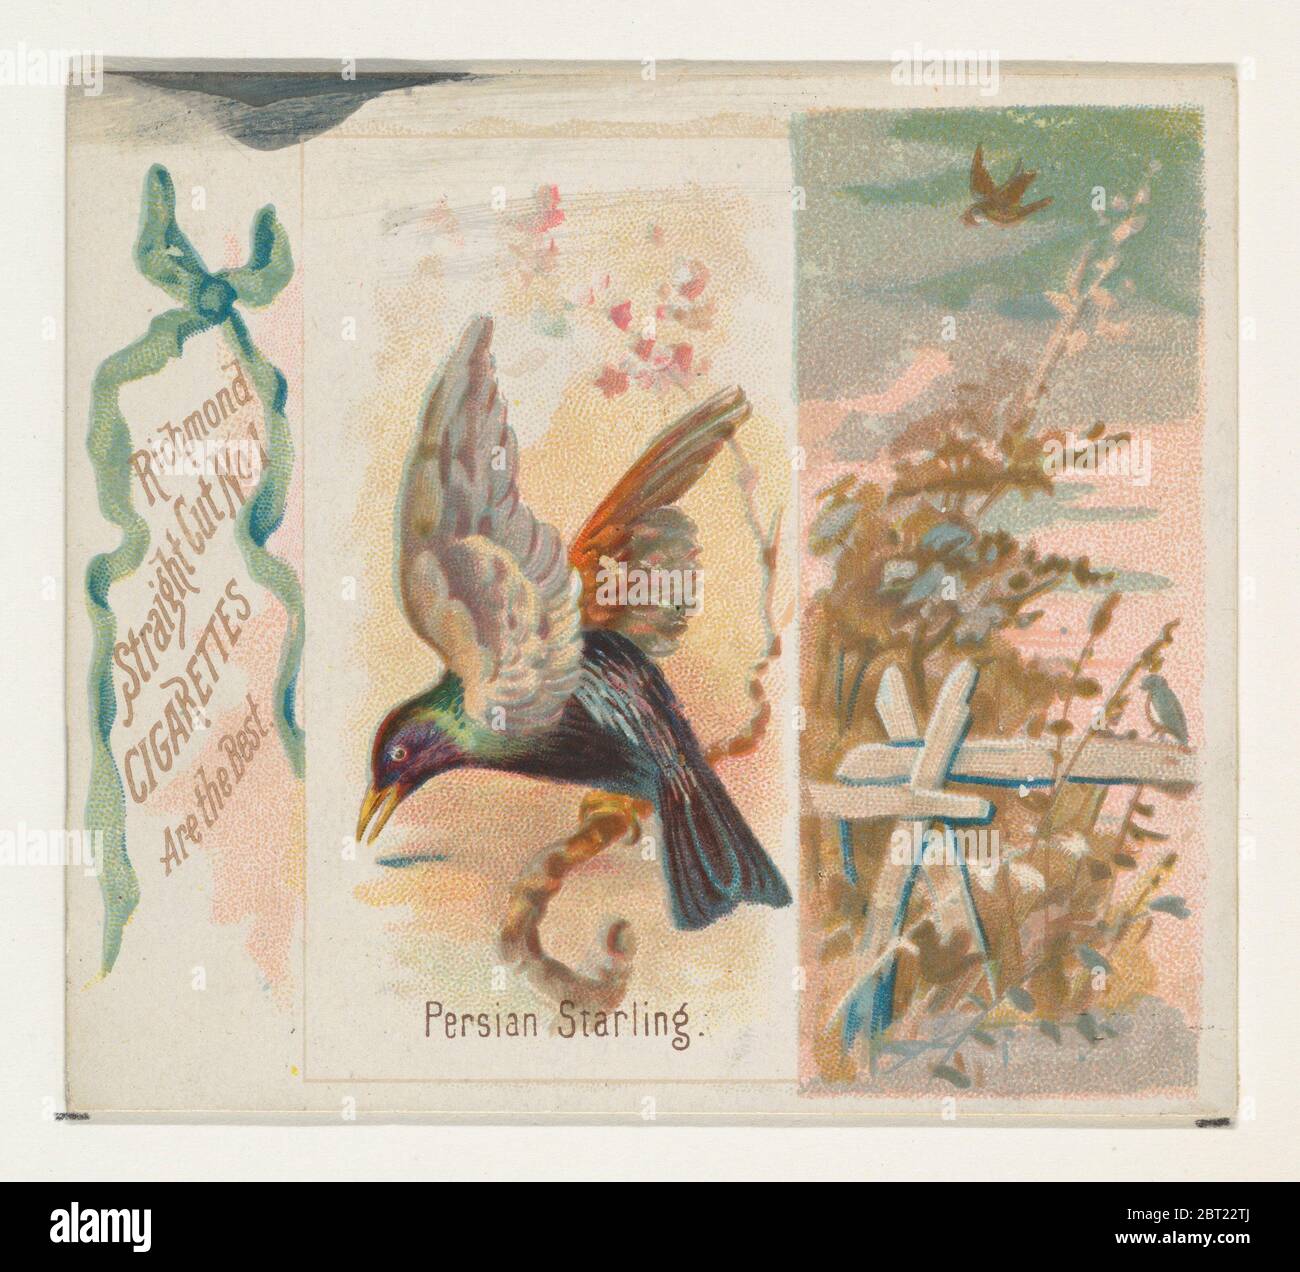 Perse Starling, de la série Song Birds of the World (N42) pour Allen & amp; Ginter cigarettes, 1890. Banque D'Images